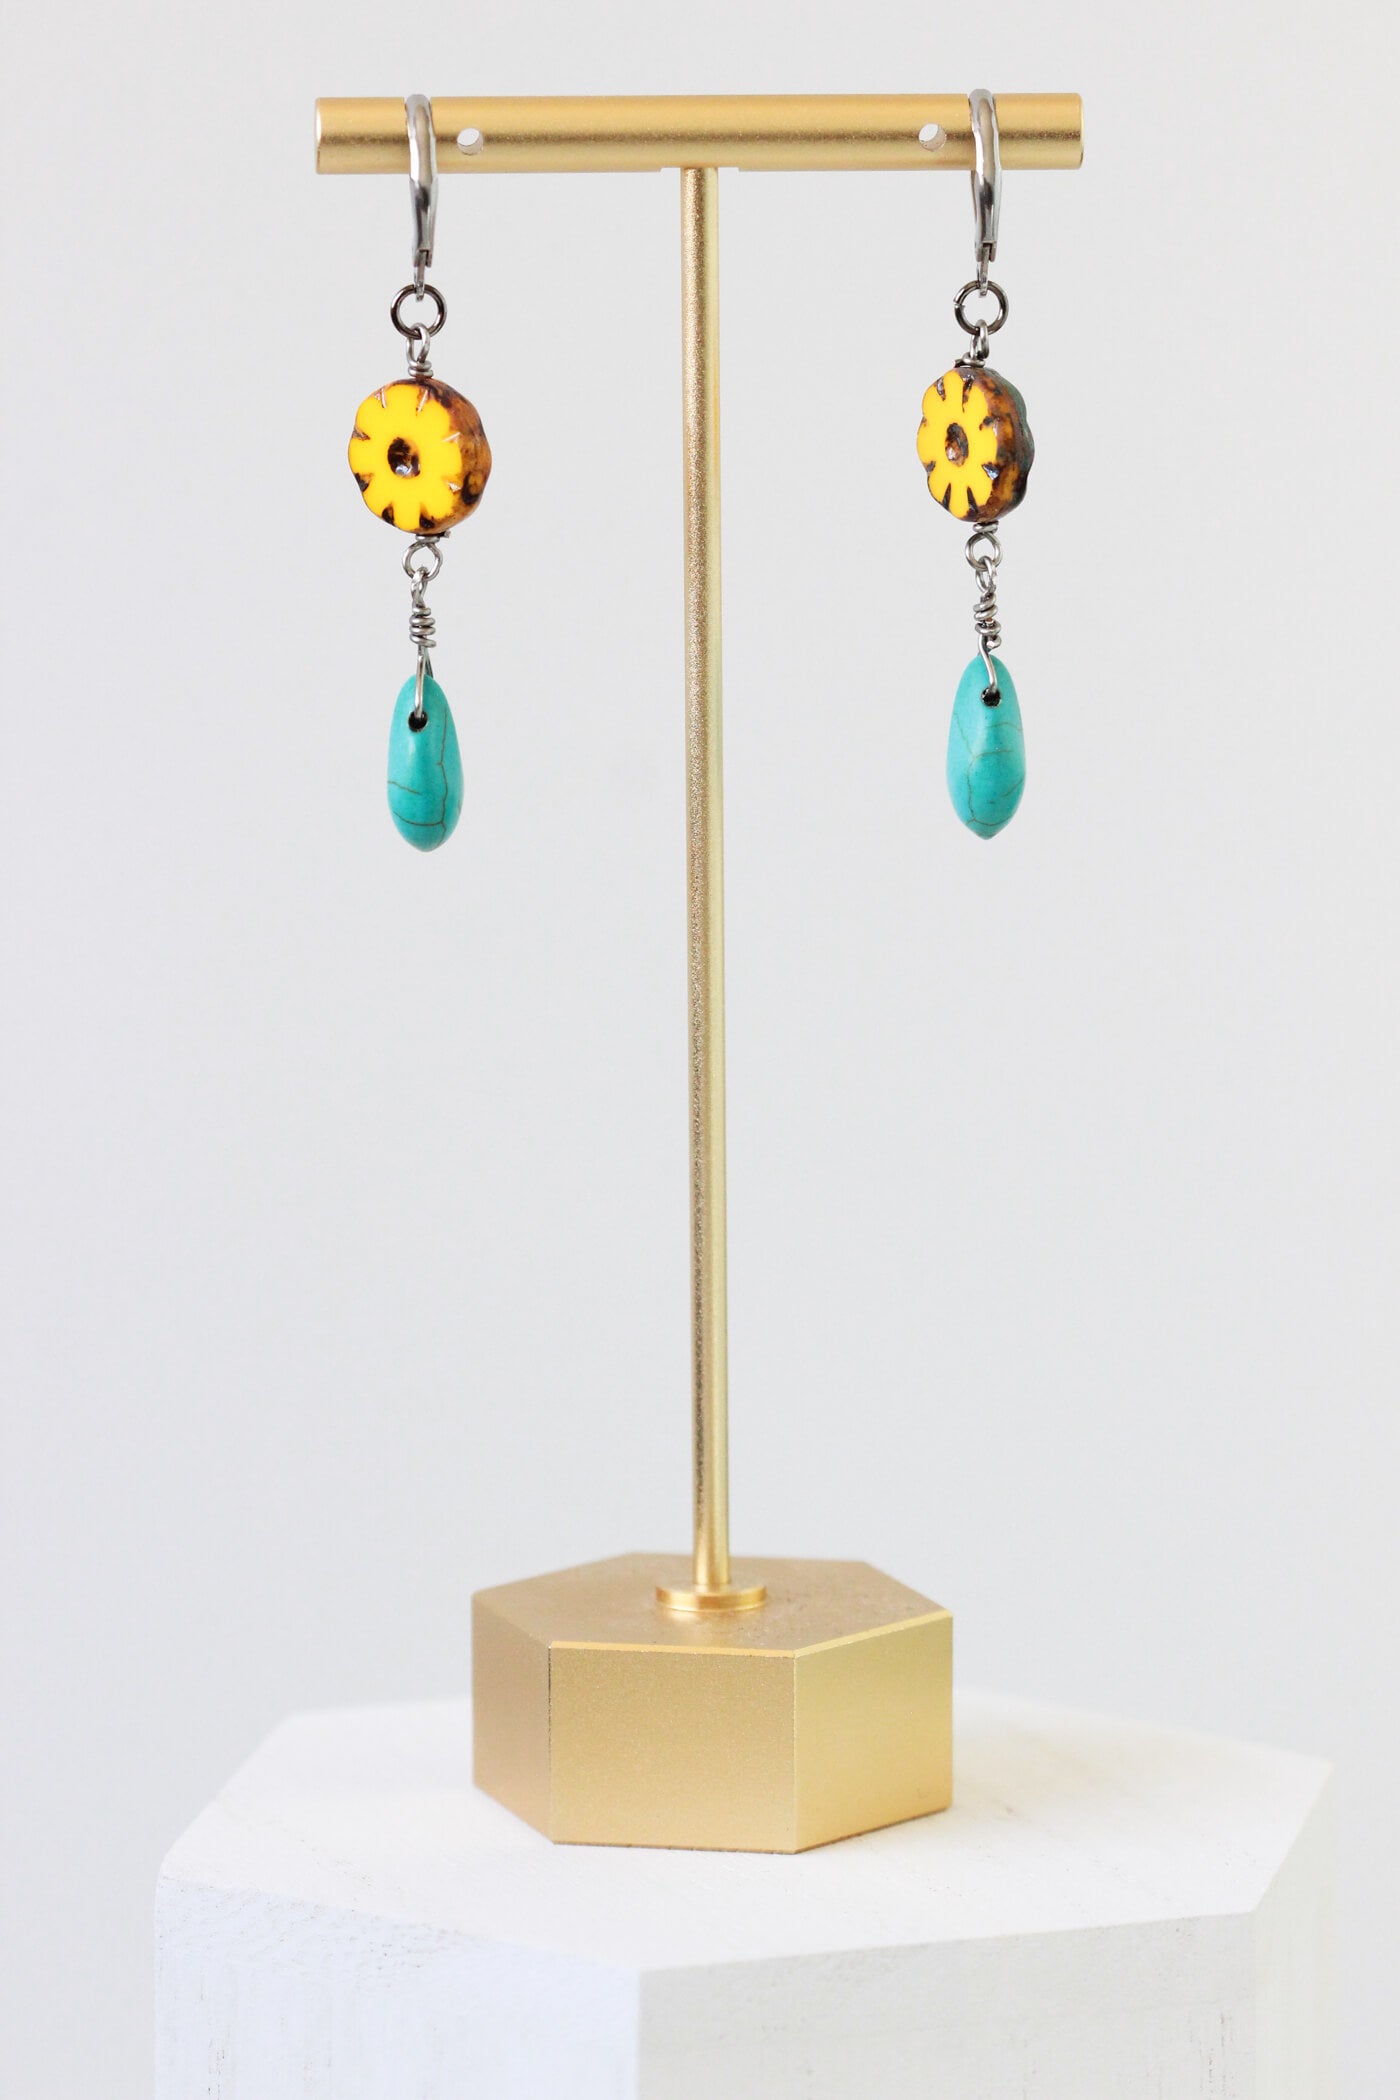 Yellow Flower Turquoise Dangle Earrings - Dia De Los Muertos Jewelry - Flower Drop Earrings by Kaleidoscopes And Polka Dots